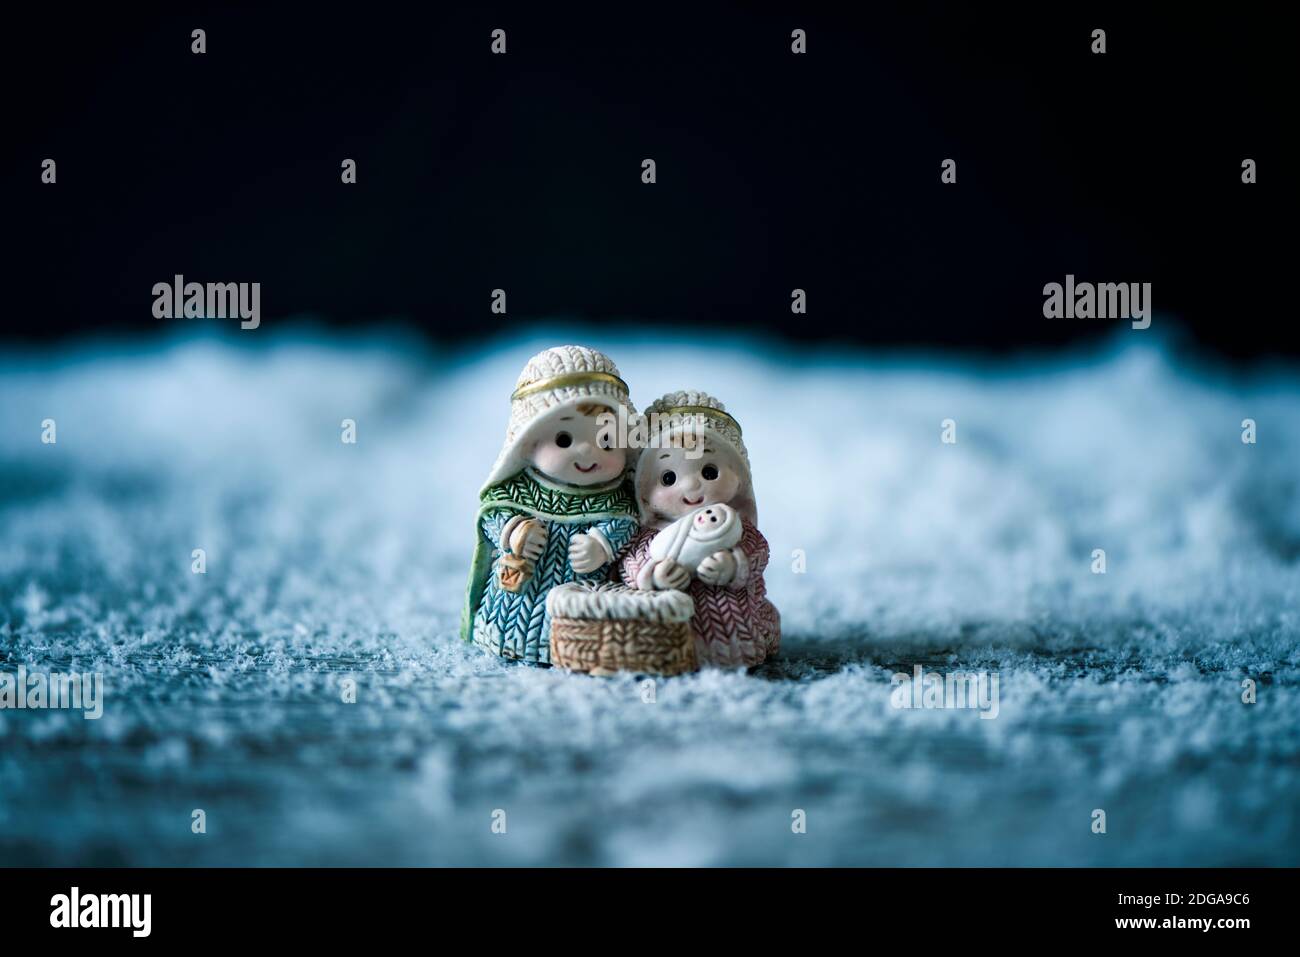 la santa famiglia, il bambino gesù, la vergine maria e san giuseppe, sulla neve su sfondo nero con qualche spazio vuoto in cima Foto Stock